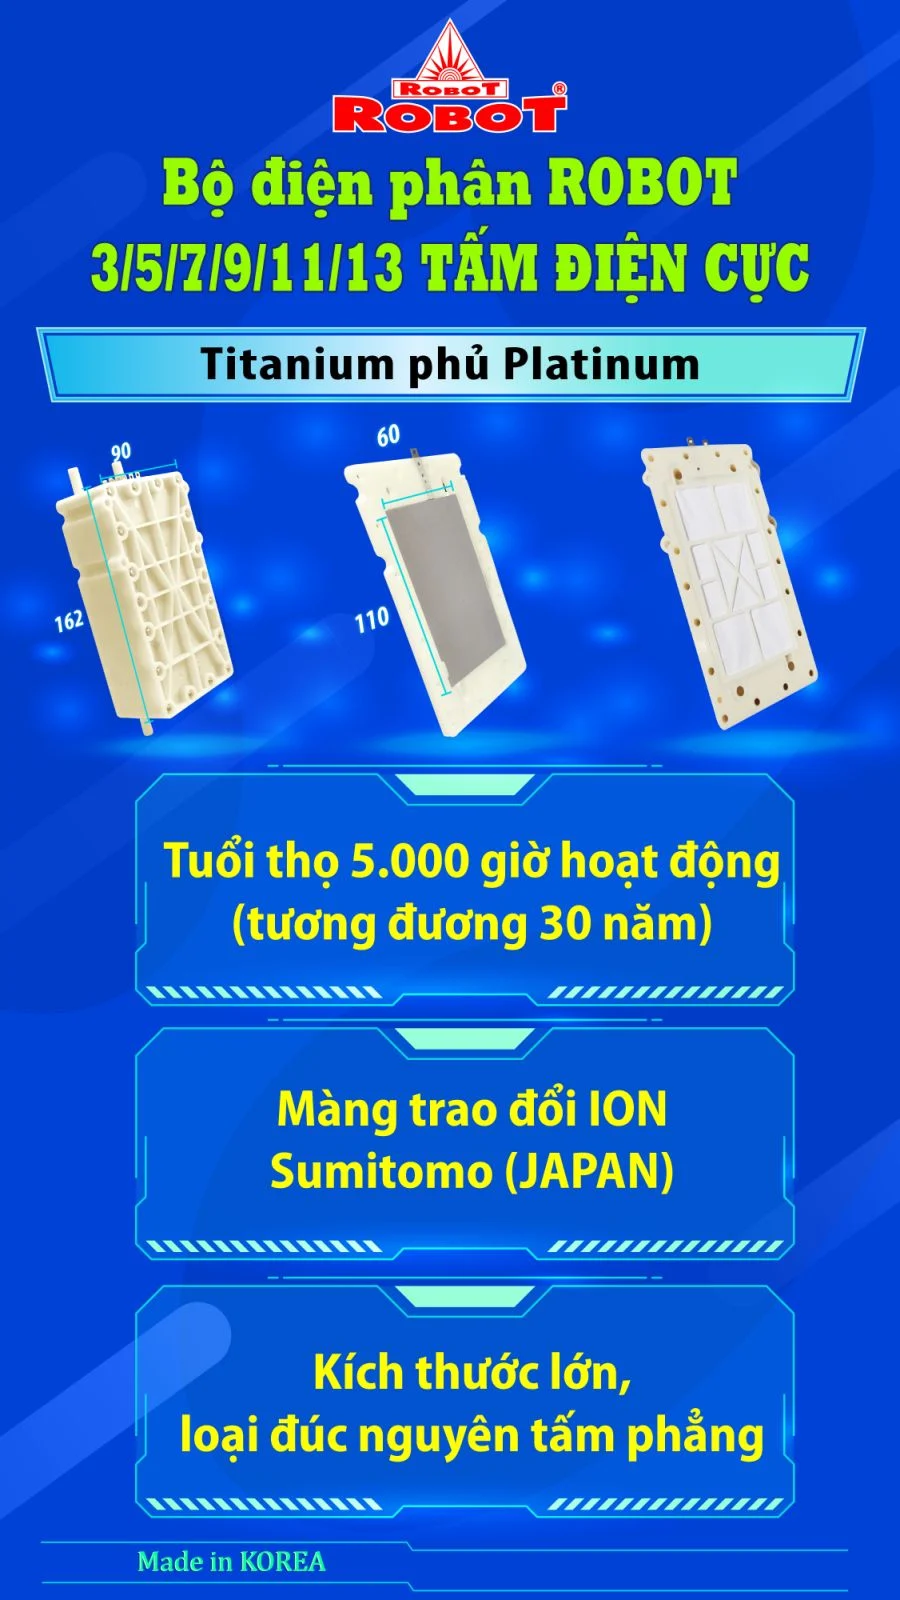 Bộ điện phân đến 3 tấm điện cực Titanium phủ Platinum của IONQUEEN 511